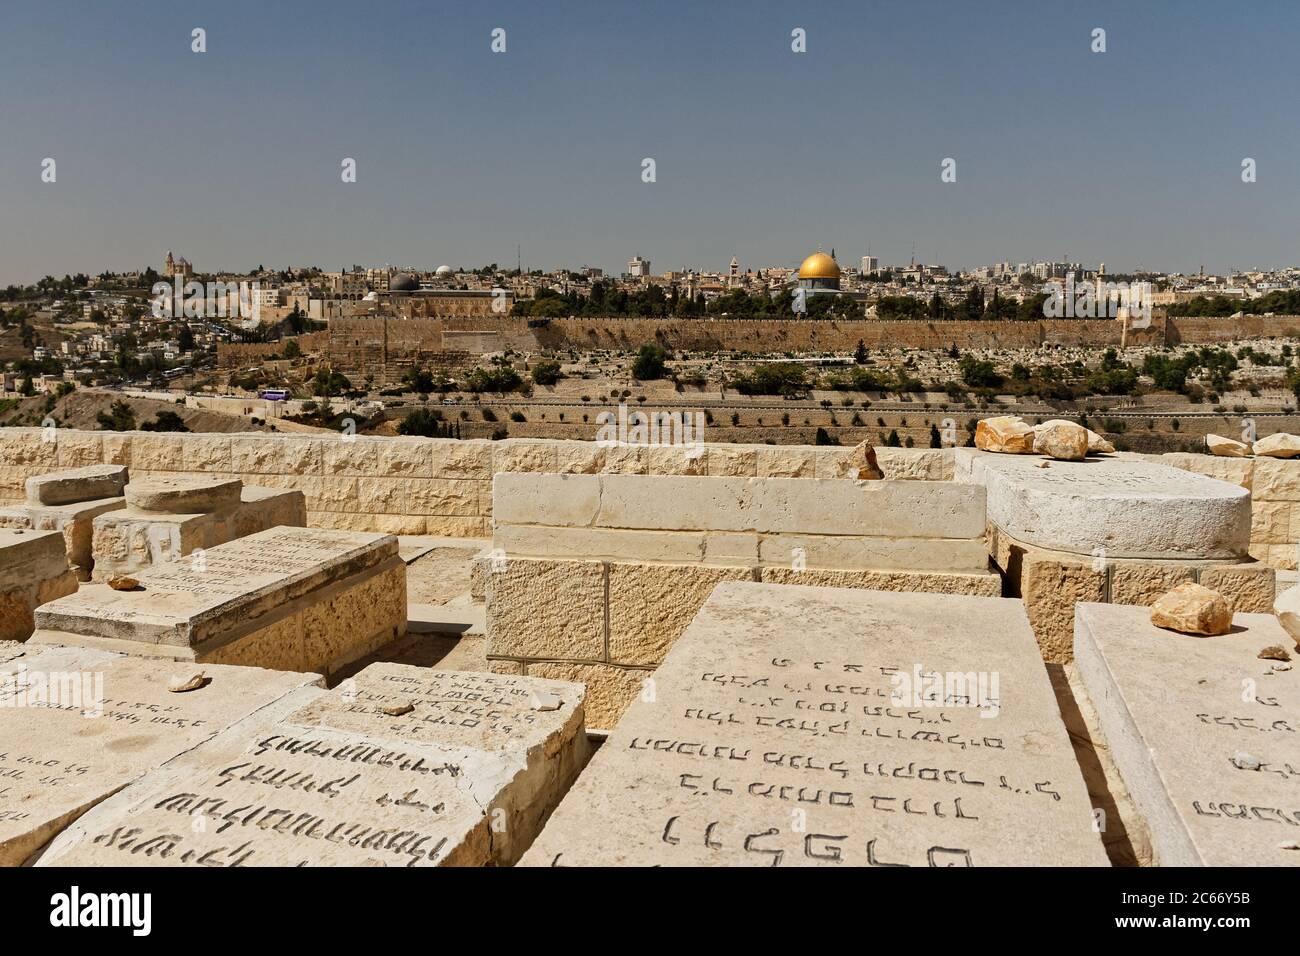 Vue de Jérusalem, Dôme du Rocher sur le Mont du Temple depuis le Mont des oliviers avec tombes juives et texte hébreu au premier plan, Israël Banque D'Images